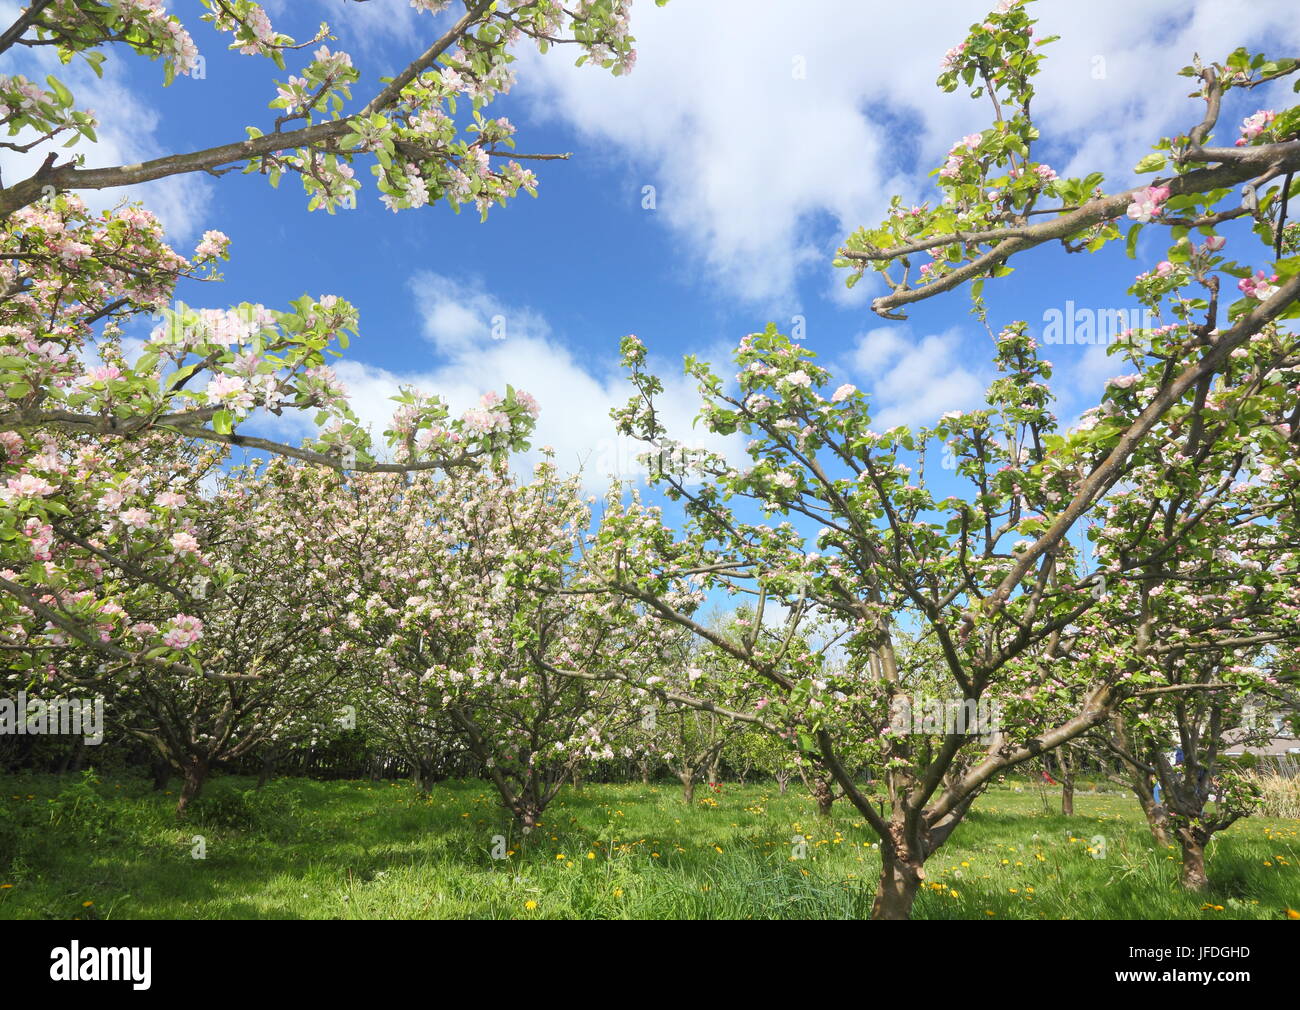 Apfelbäume der verschiedenen Sorten blühen in einem traditionellen englischen Obstgarten im Frühjahr (Mai), UK Stockfoto